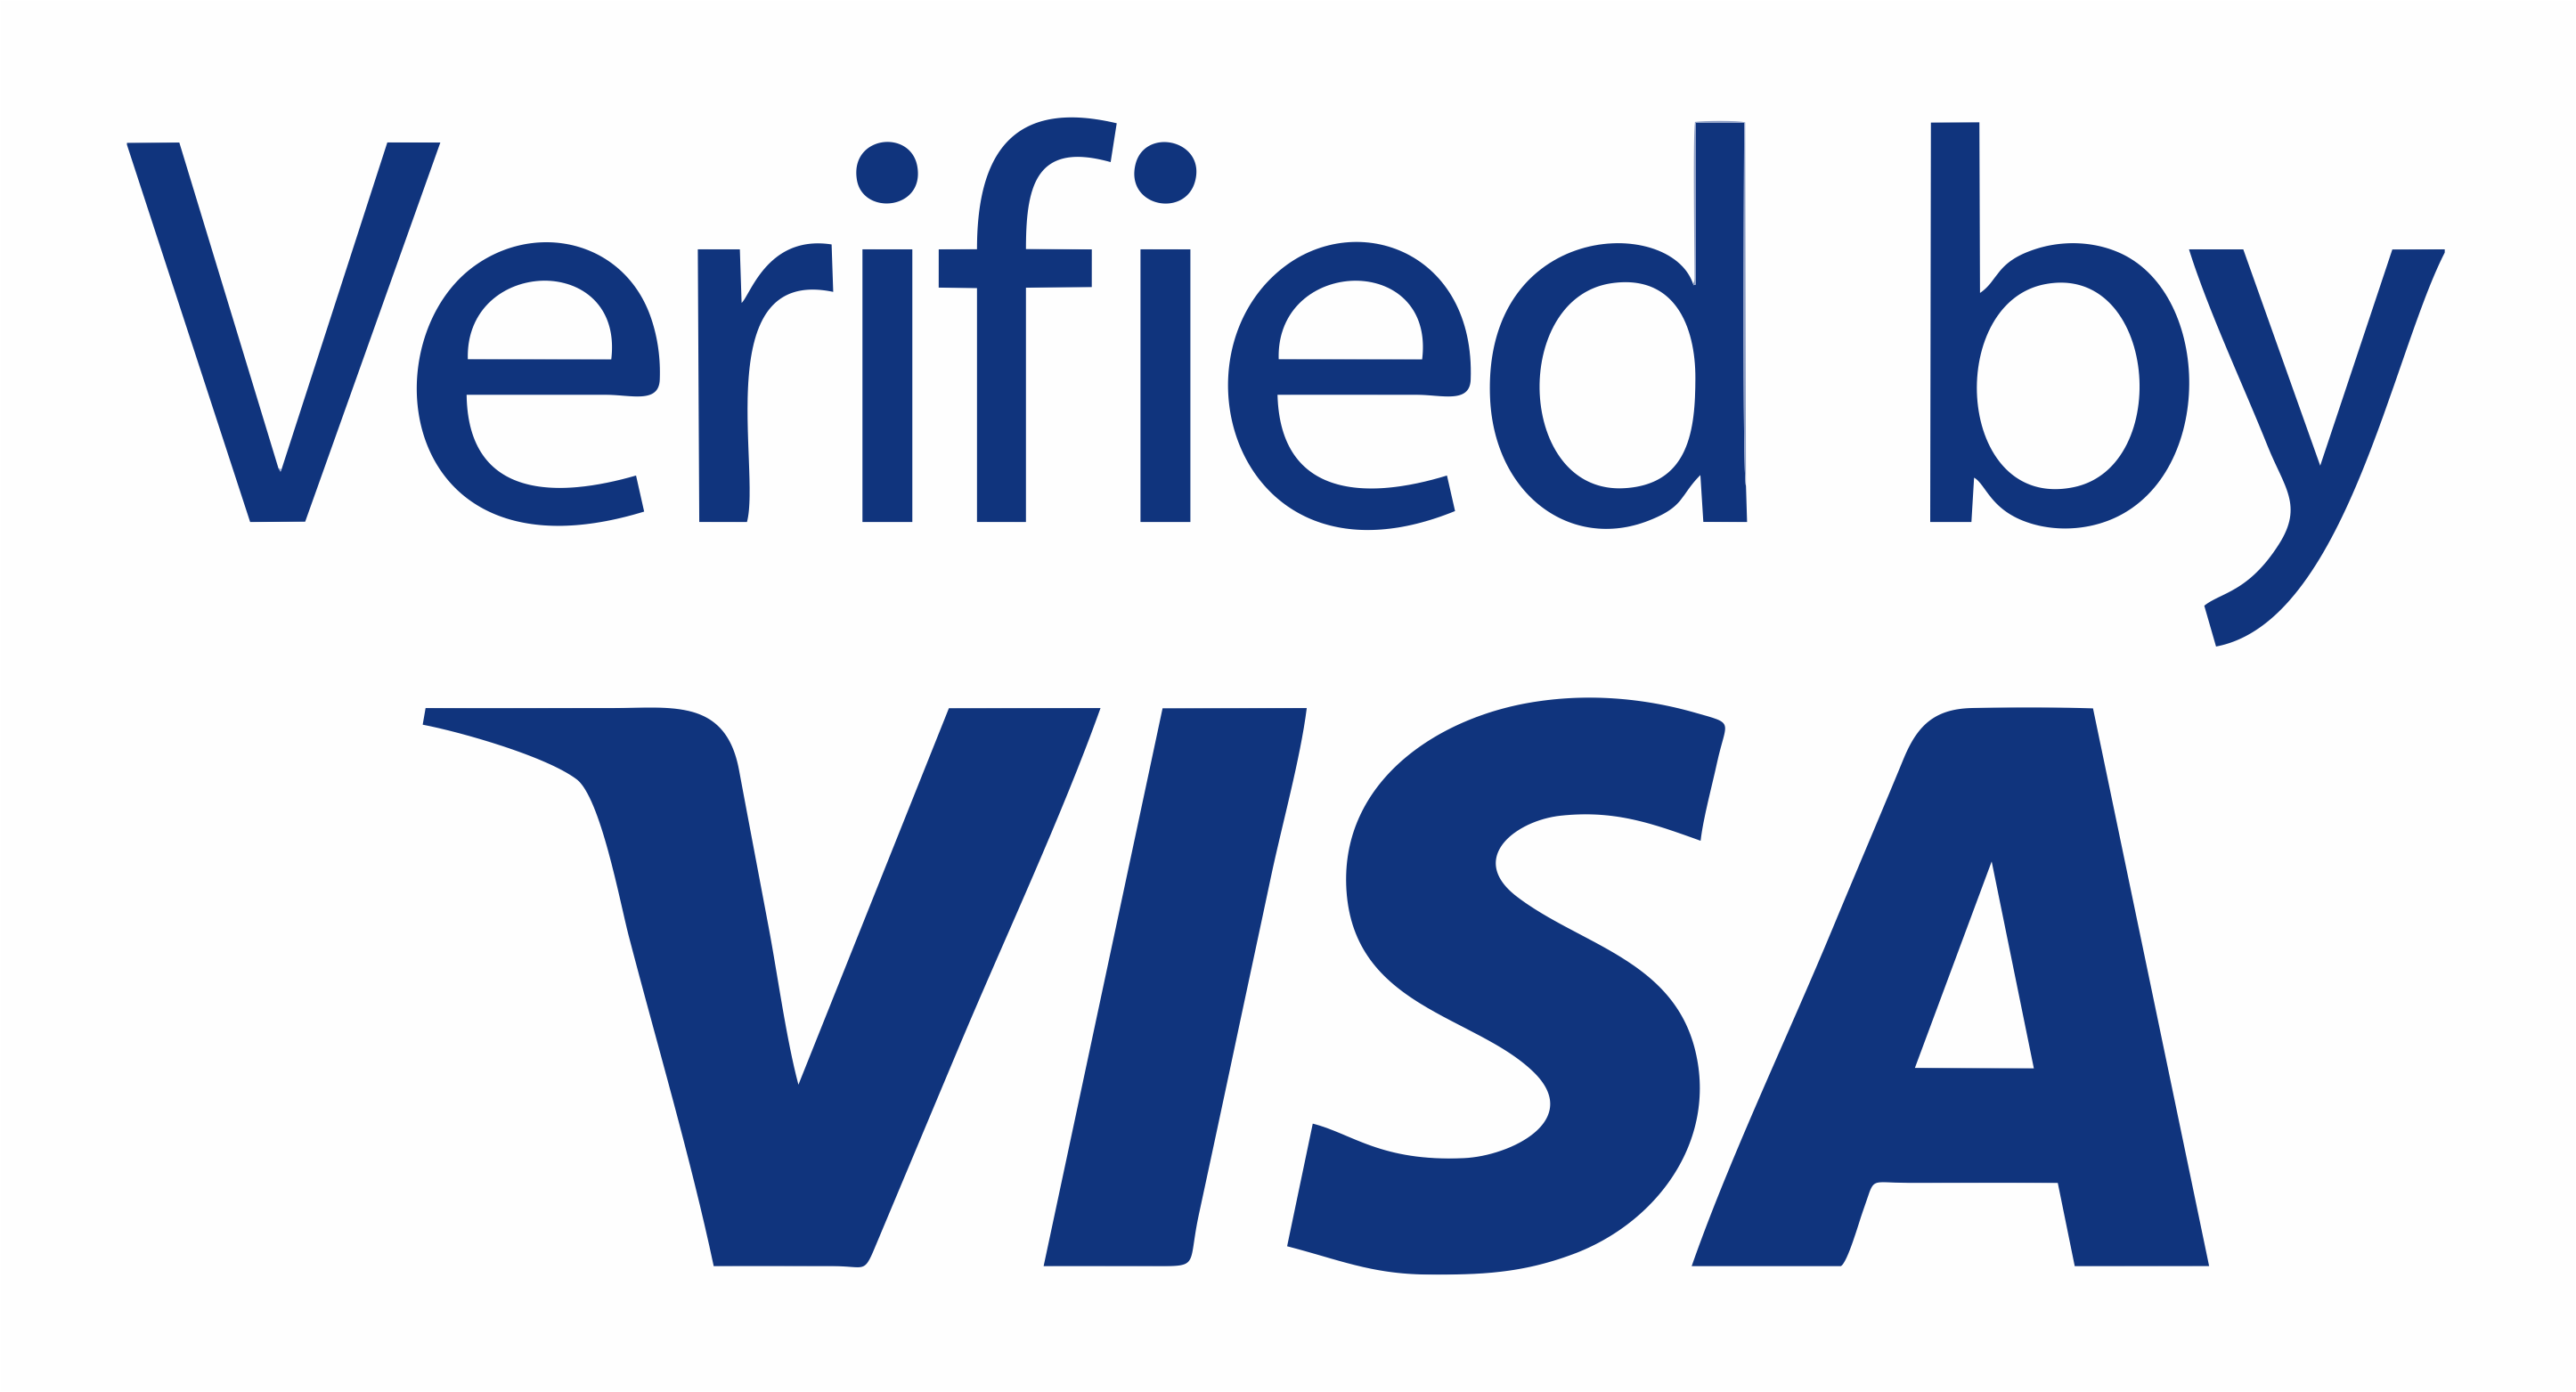 T me ccn visa. Verified by visa logo. Verified by visa svg. Verified by visa logo svg. Виза логотип без фона.